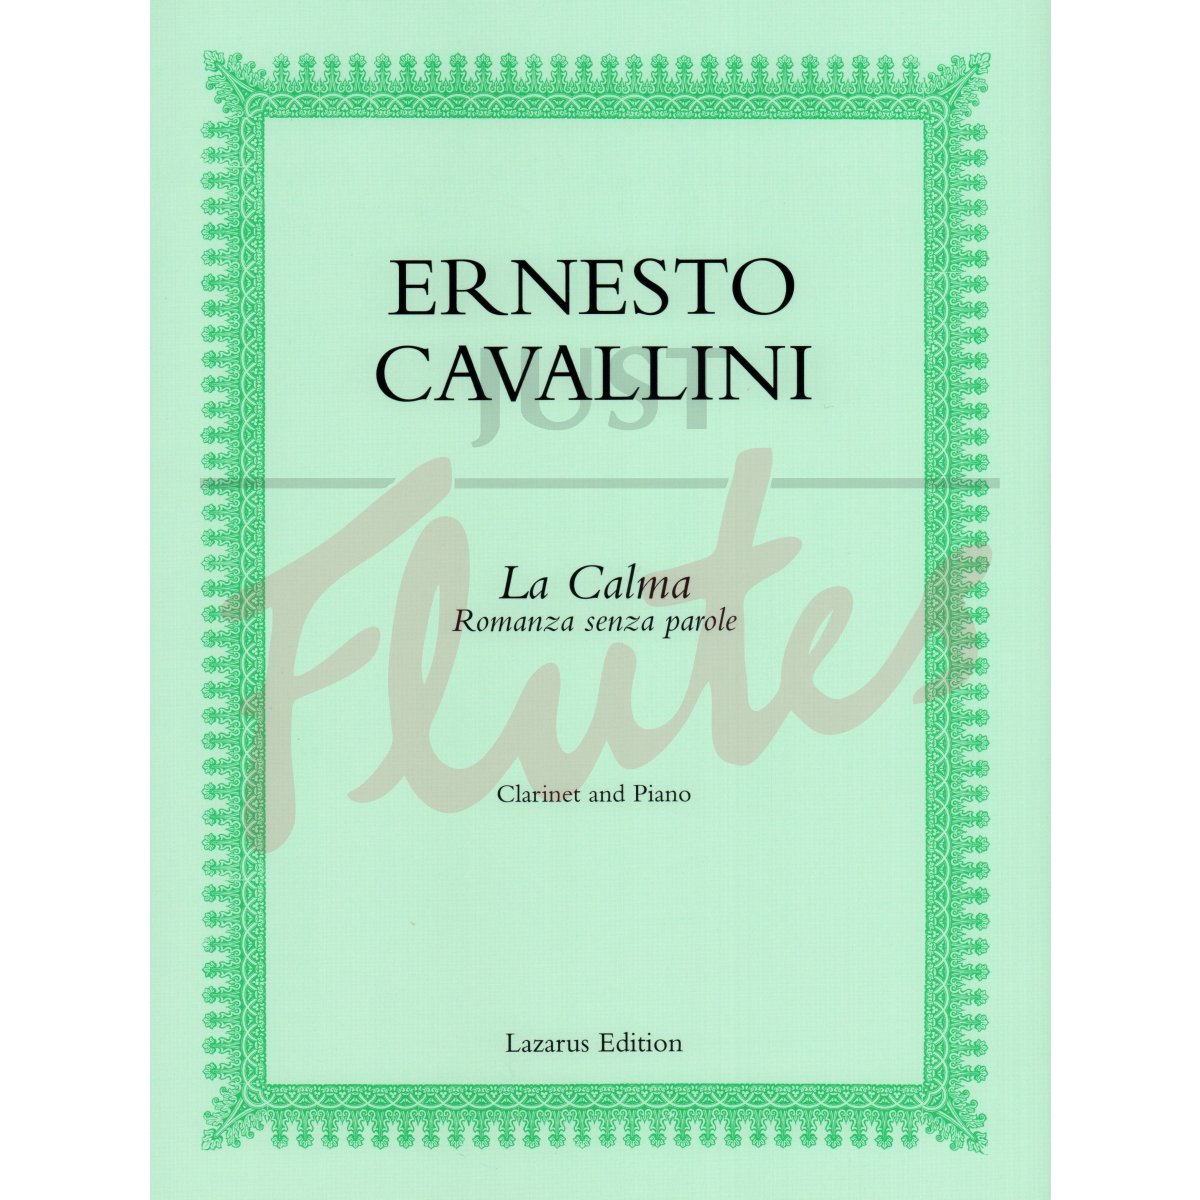 La Calma (Romanza senze parole) for Clarinet and Piano